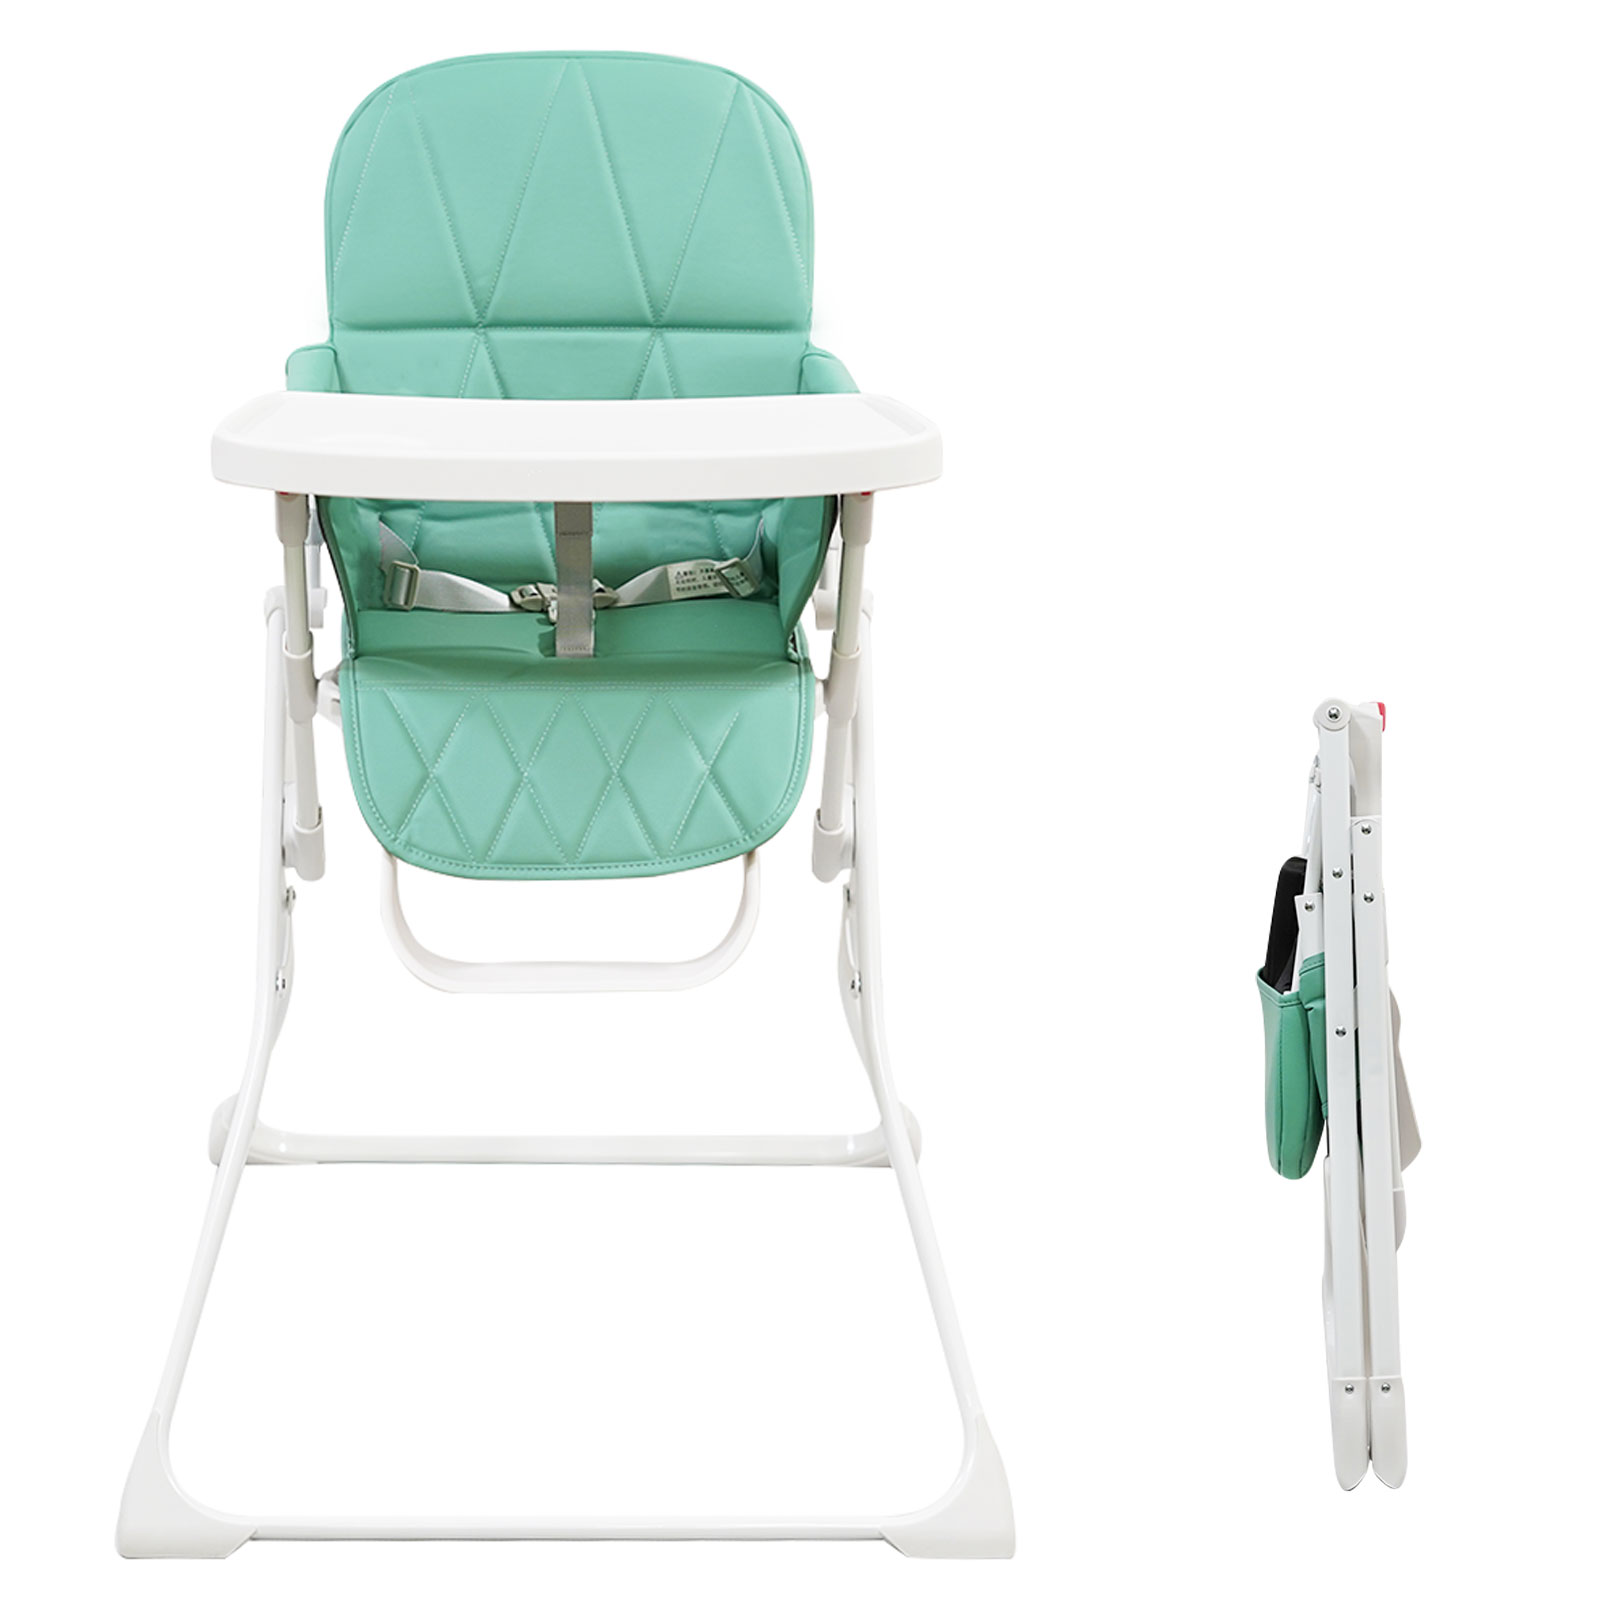 ベビーチェア ハイチェア コンパクト 軽量 折りたたみ 子供 食事 椅子 6ヶ月から36ヶ月まで 赤ちゃん 離乳食 いす 安全ベルト付き  15kgまで対応。